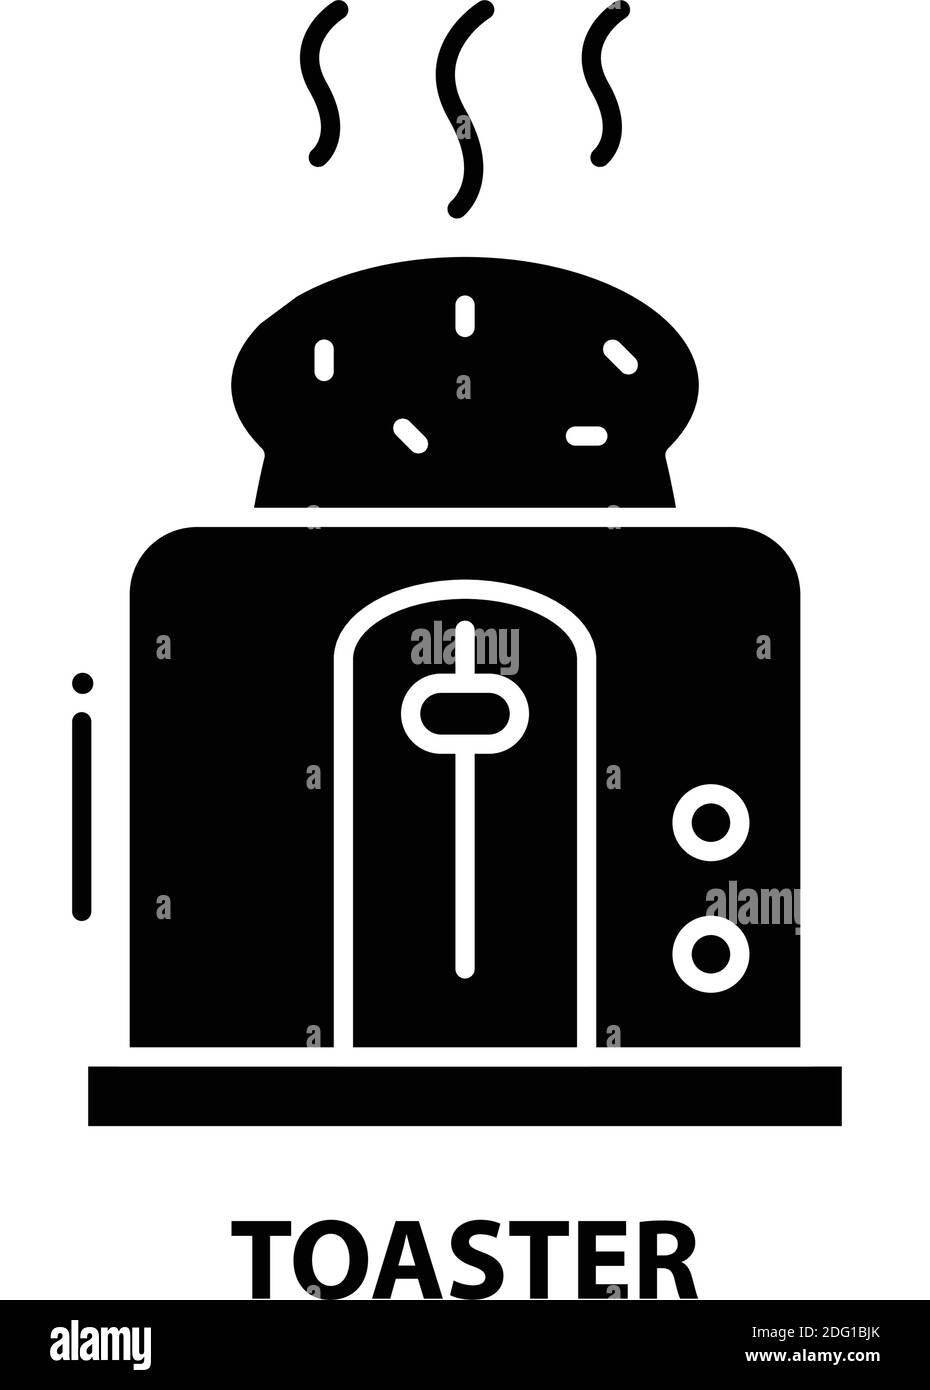 toaster-Symbol, schwarzes Vektorzeichen mit editierbaren Konturen, Konzeptdarstellung Stock Vektor